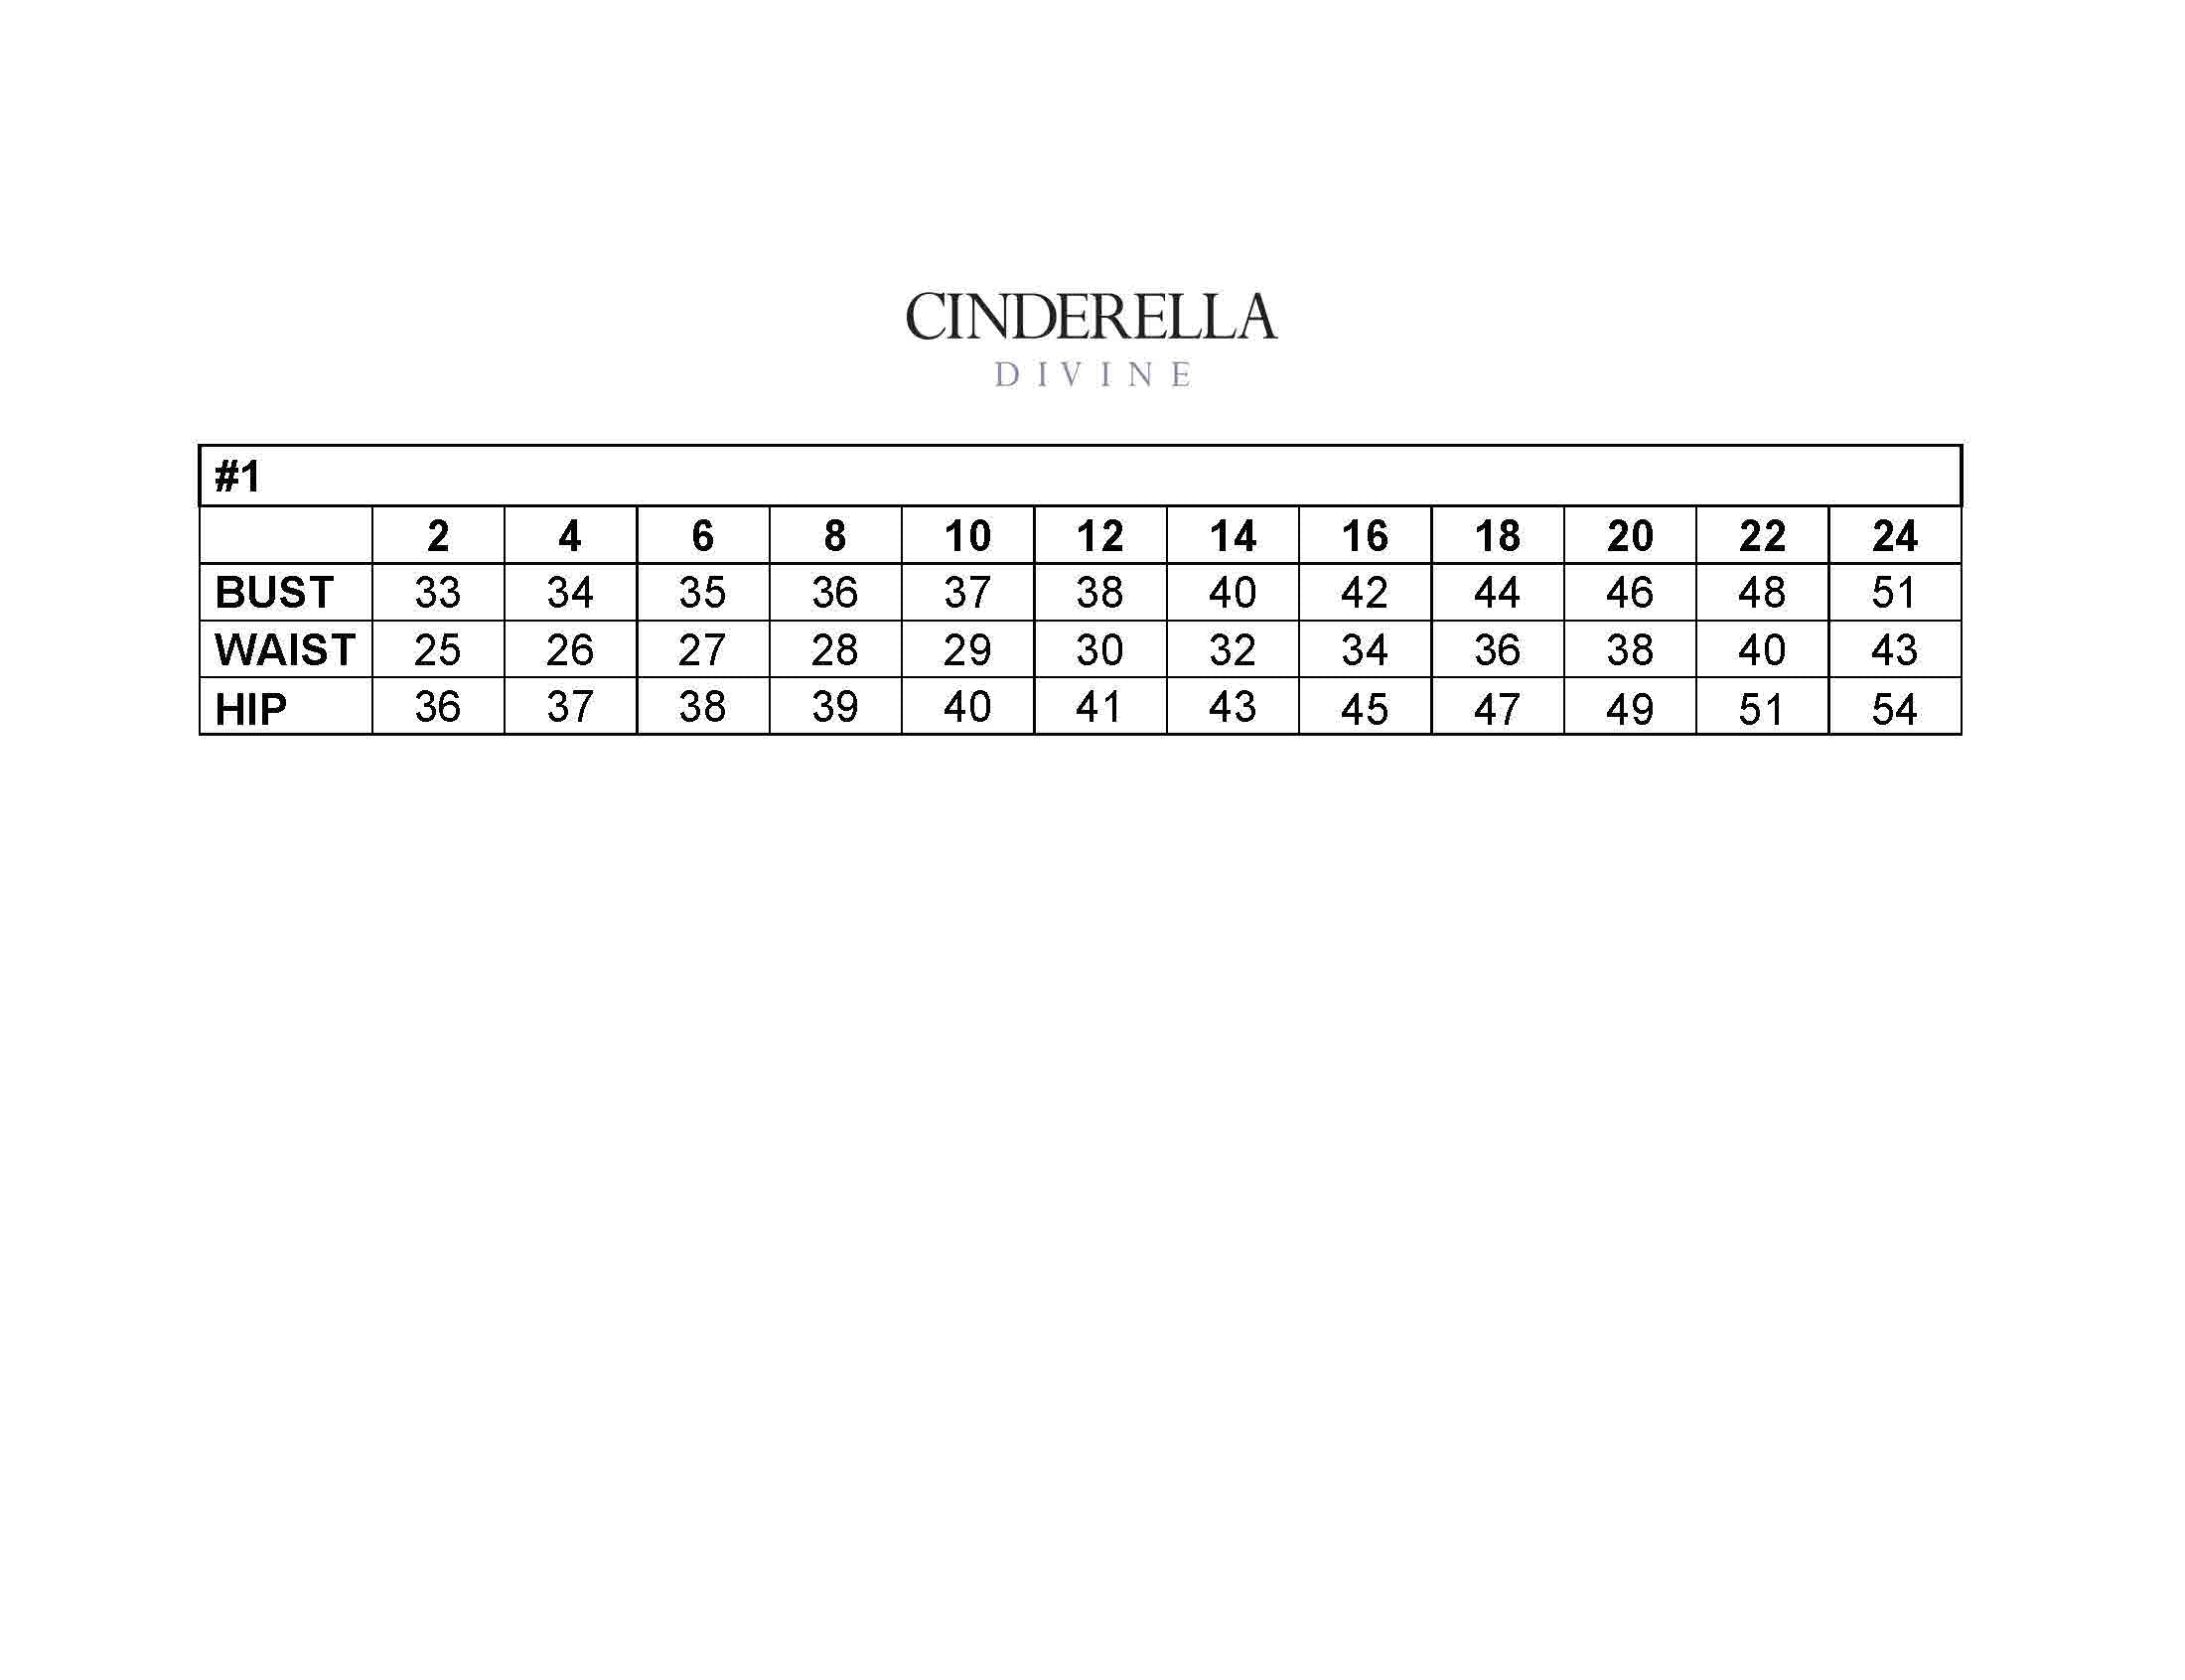 Cinderella Divine -CD857W Floral Applique A-Line Dress